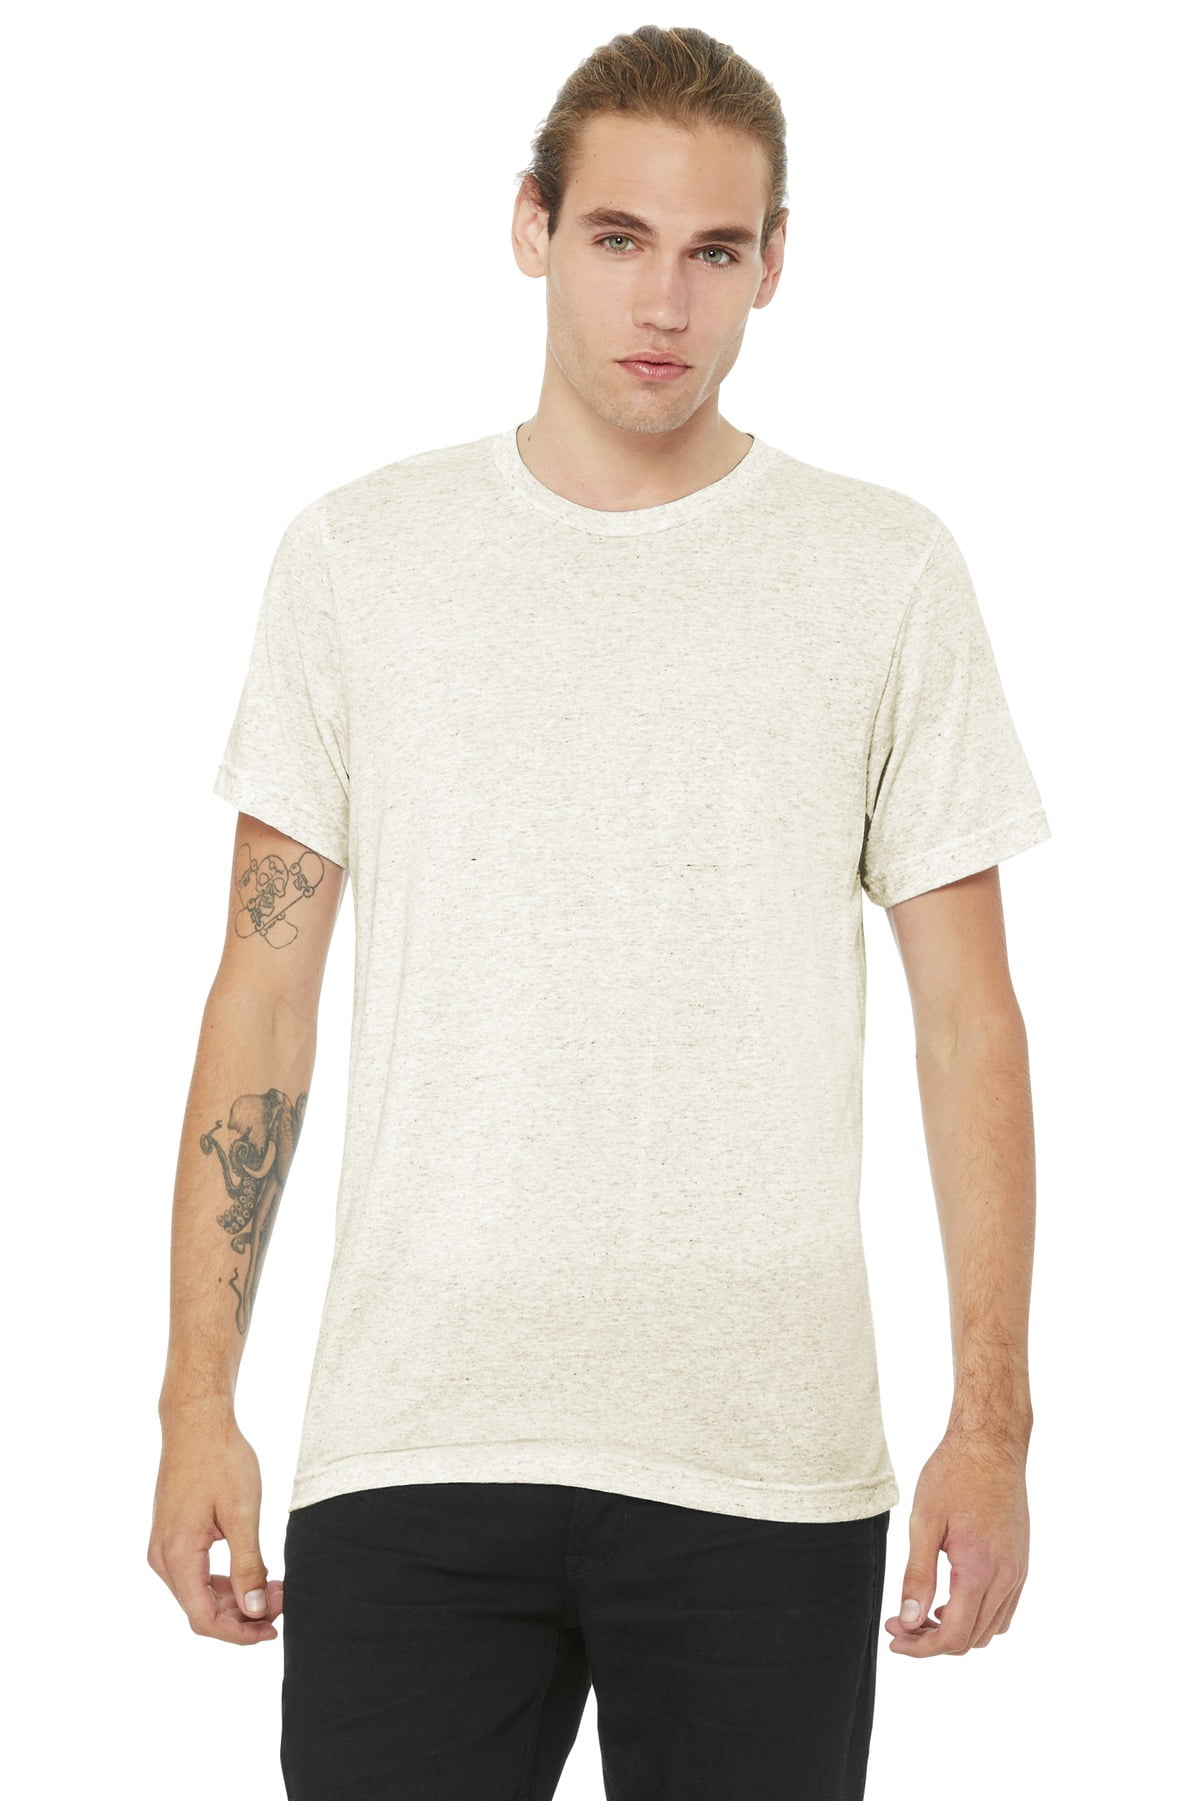 Unisex T-Shirt - TRIBLEND 2XL - Triblend OATMEAL